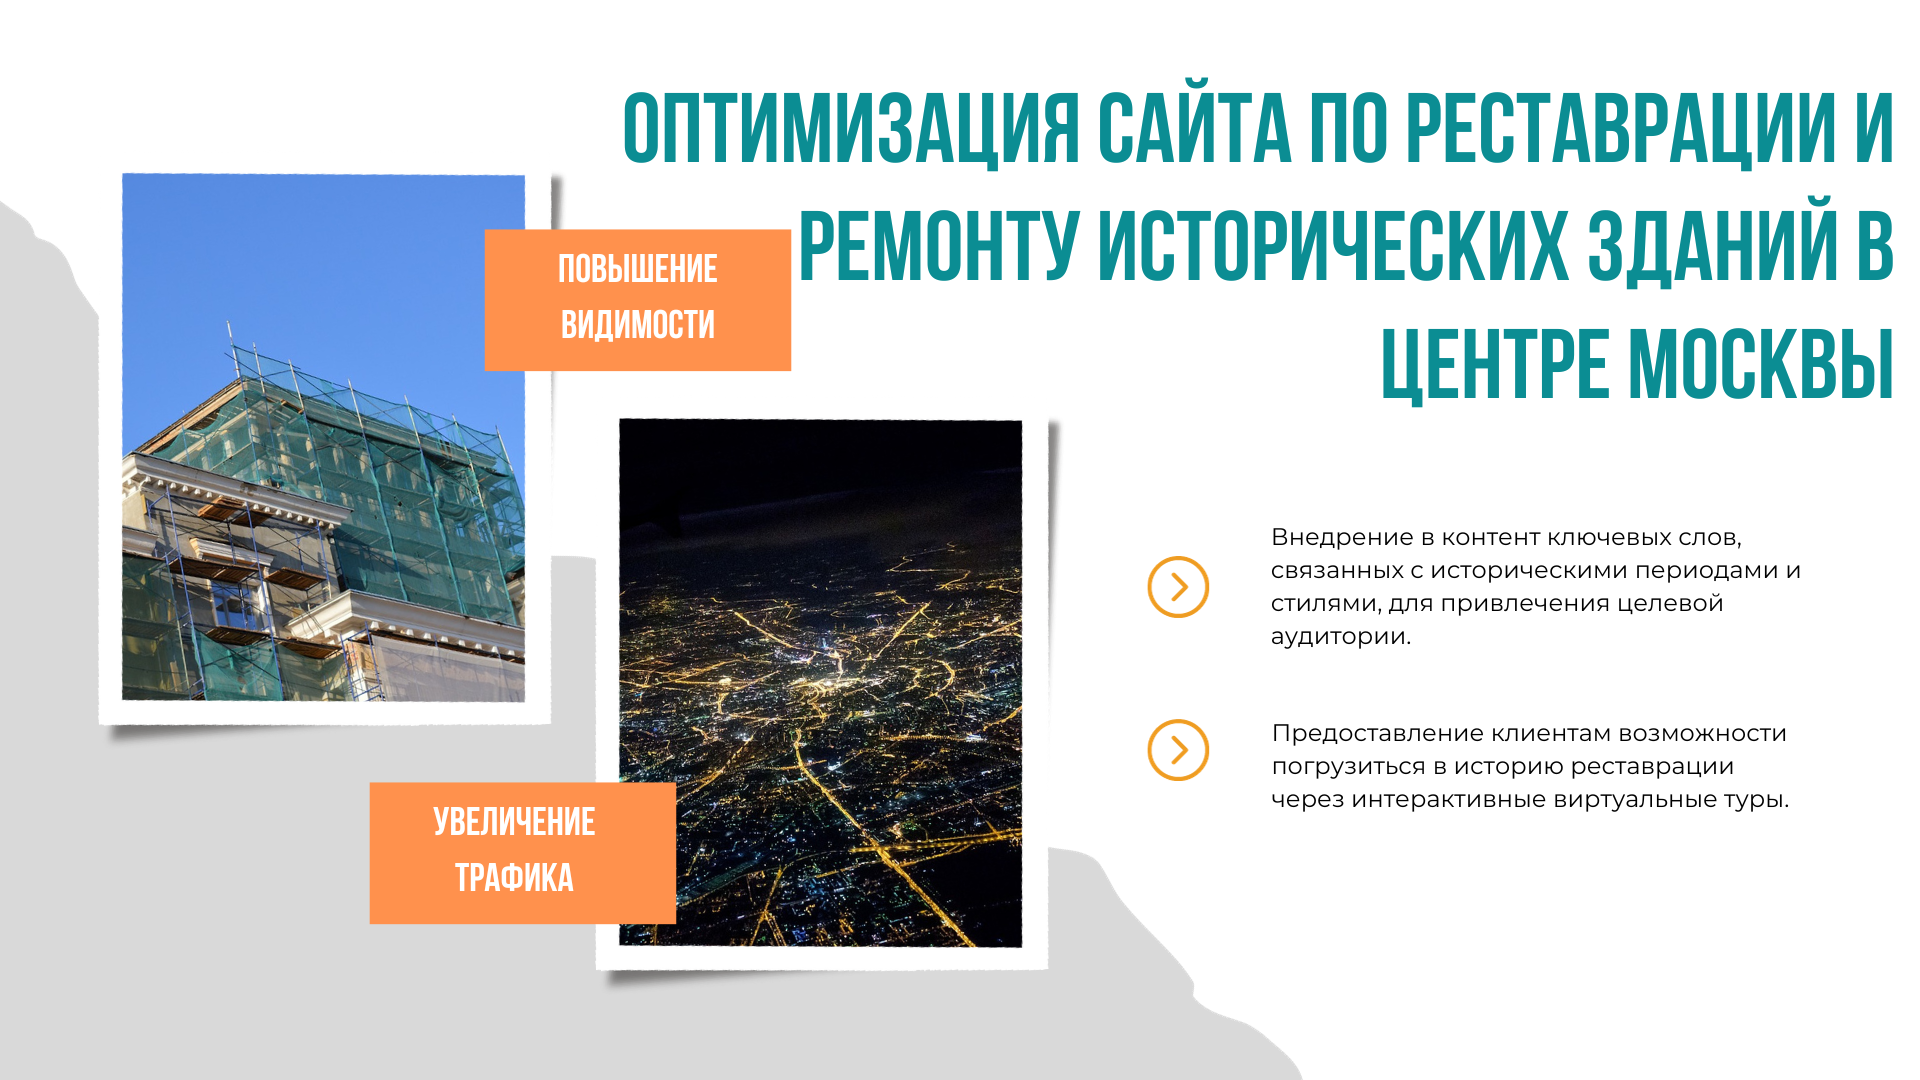 Оптимизация сайта по реставрации и ремонту исторических зданий Москвы